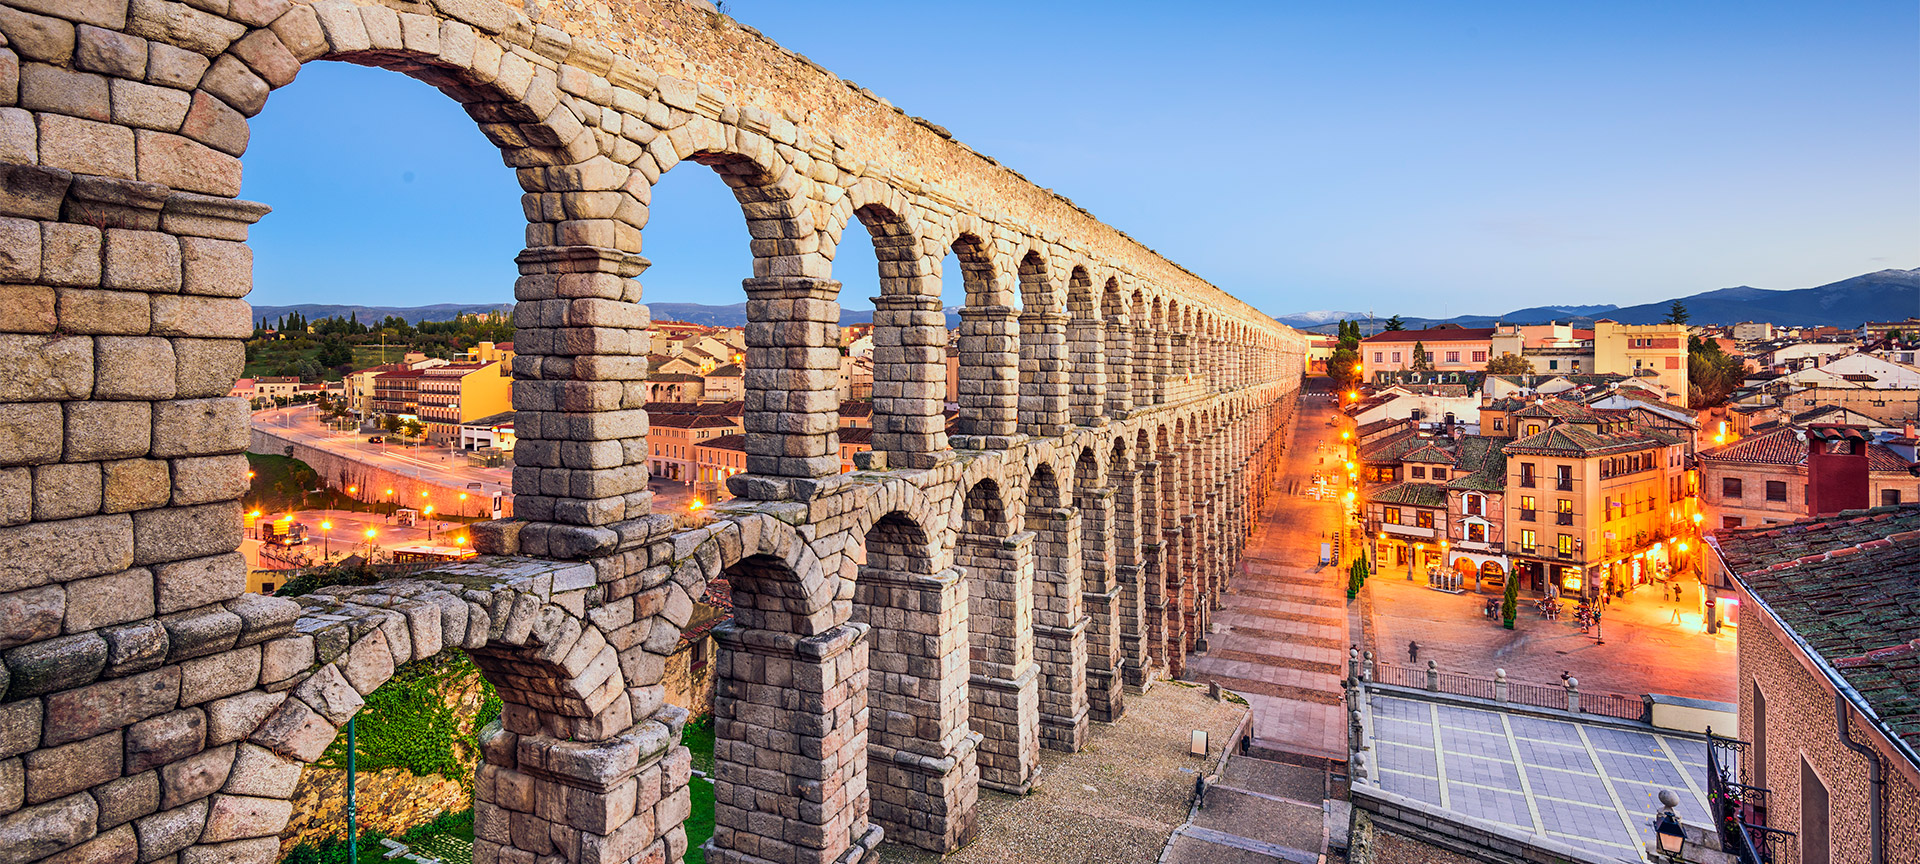 Visita Segovia in un giorno. Turismo nell'entroterra della Spagna | spain.info in italiano